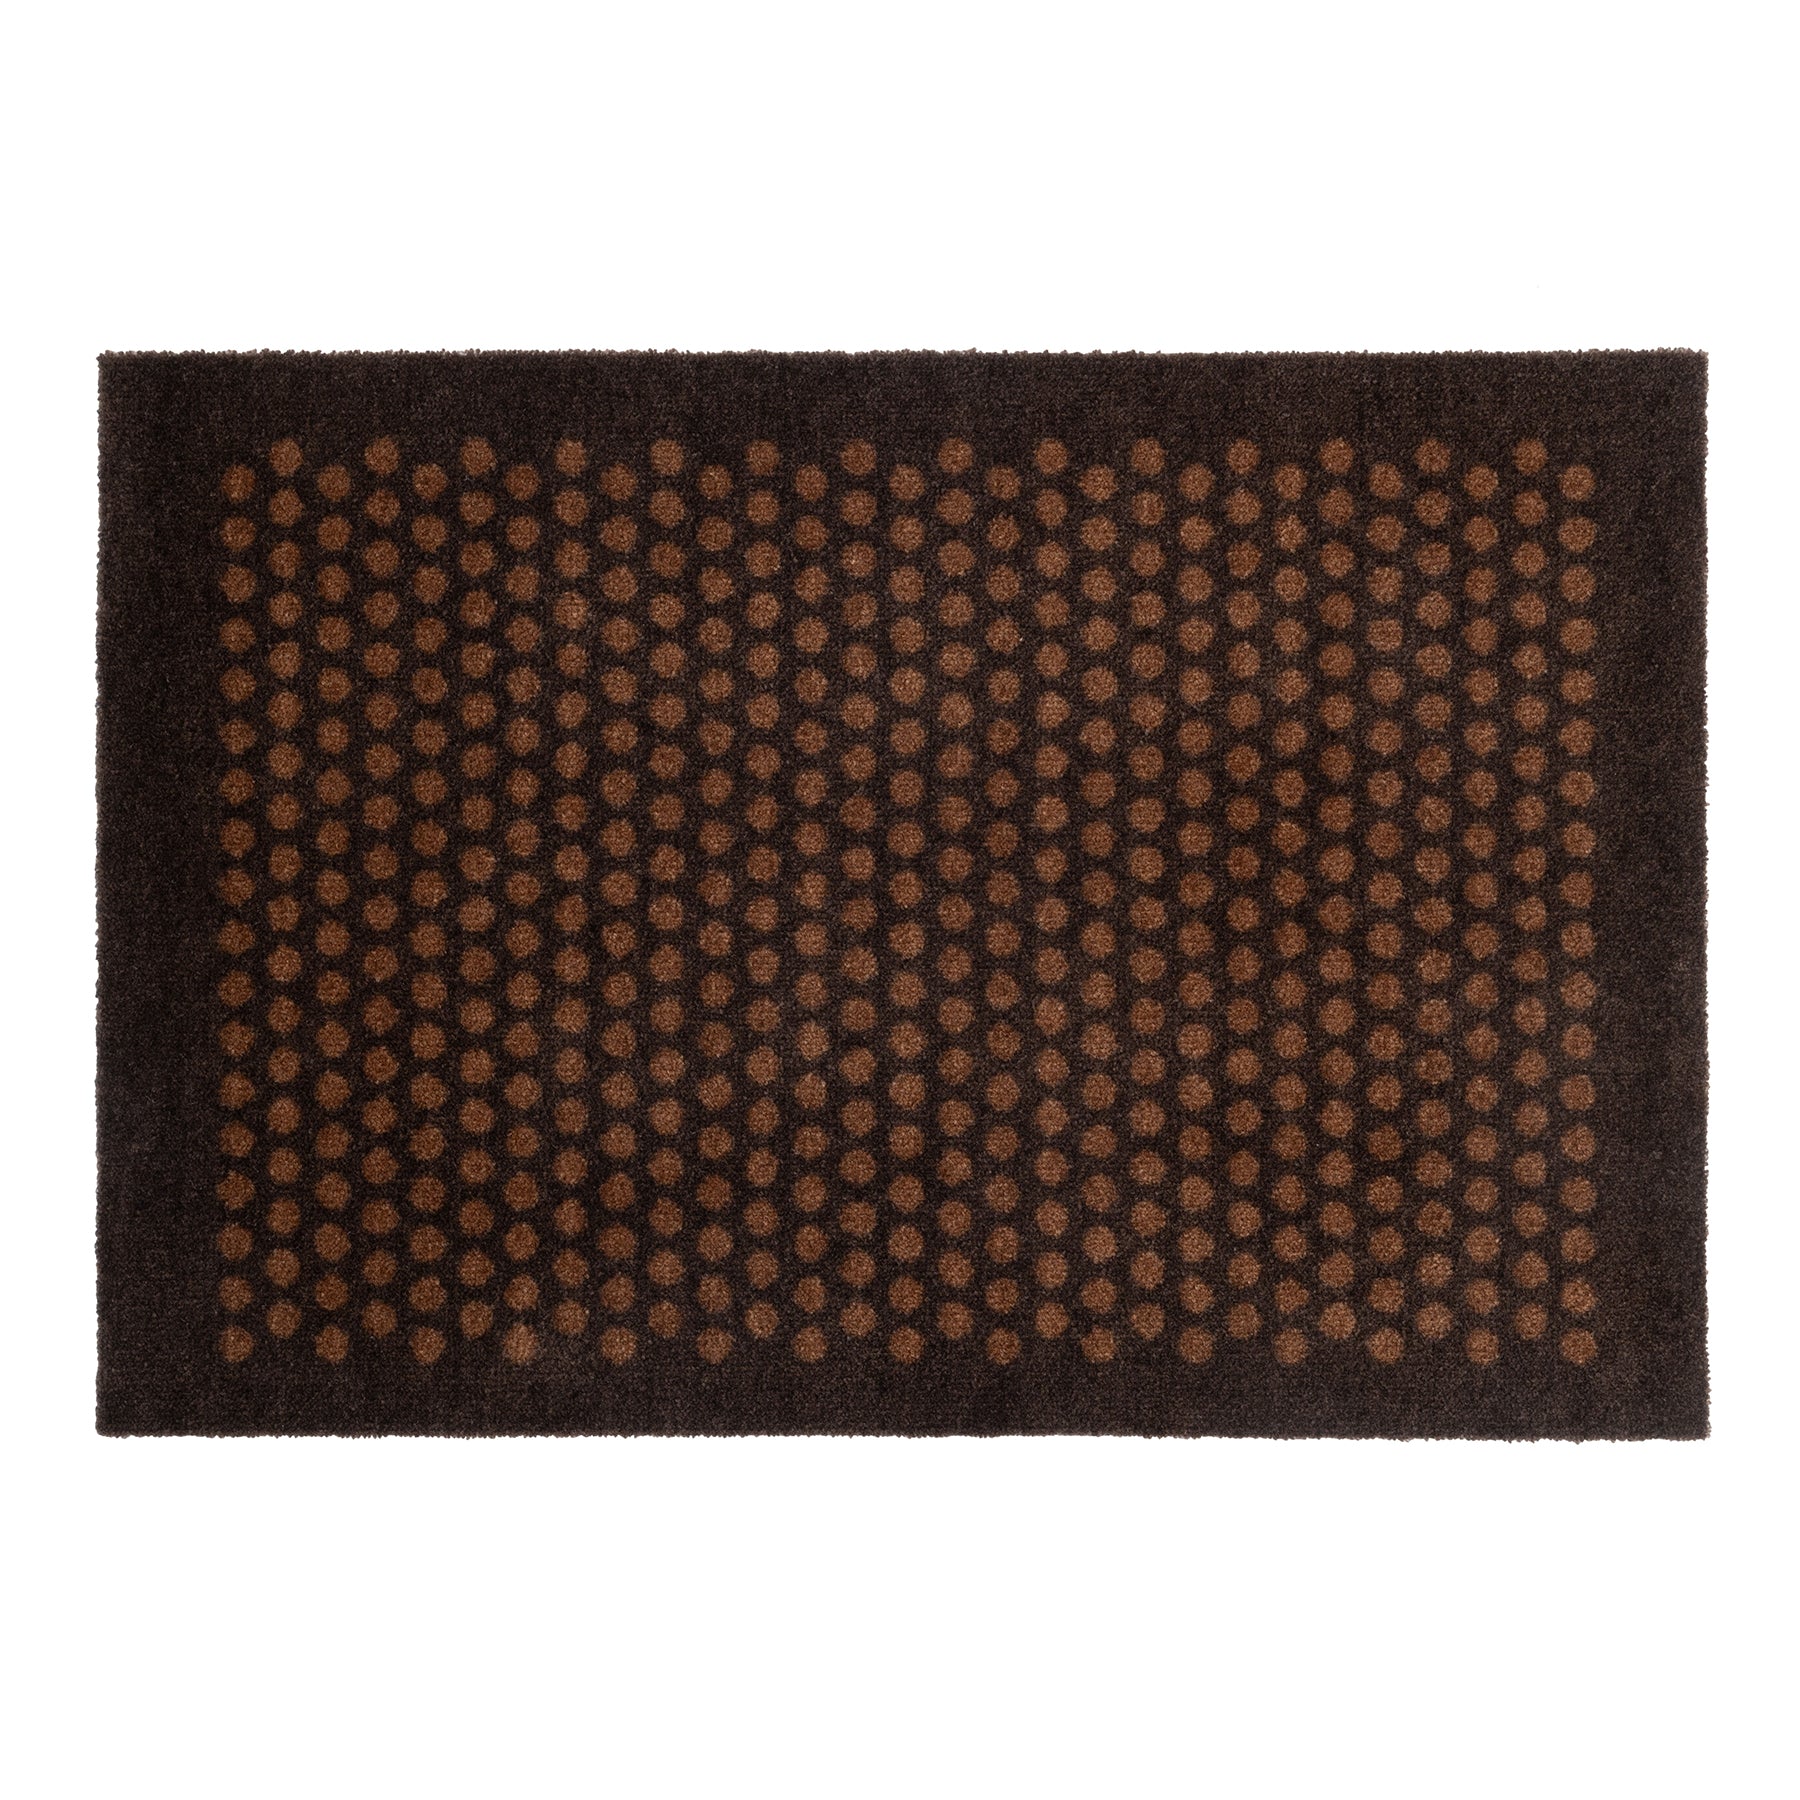 Nyheter - Teppe/Må 60 x 90 cm - Dot/Cognac -Dark Brown